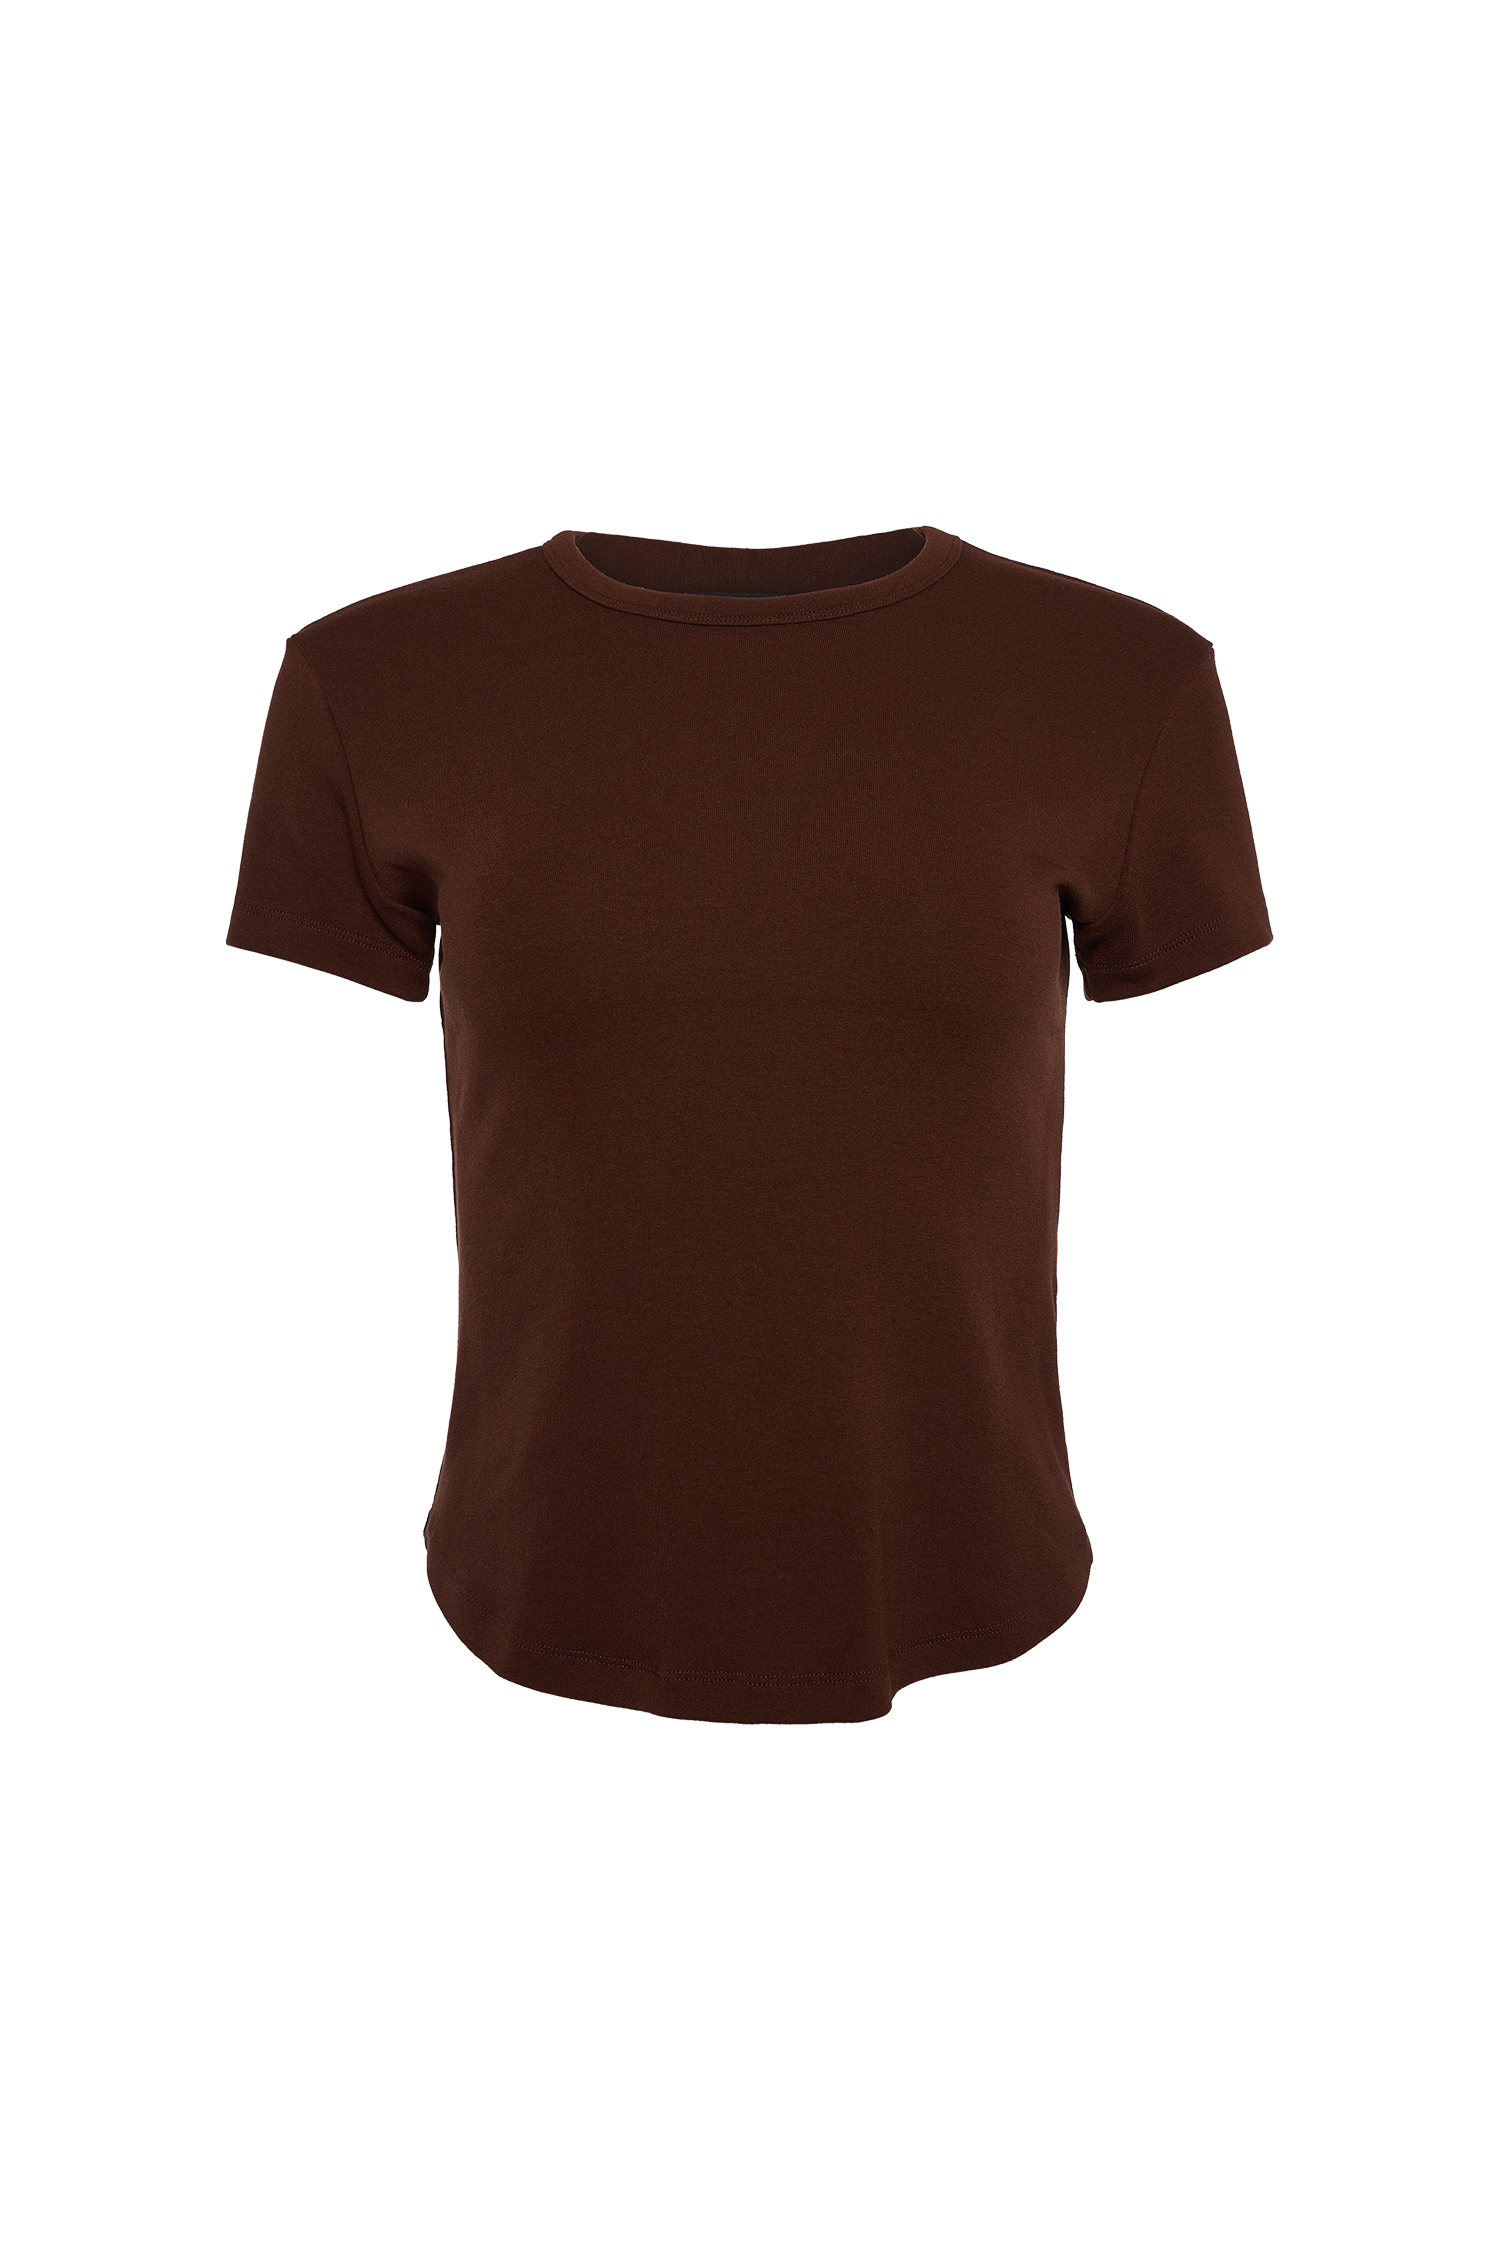 에센 캡소매 티셔츠 - 브라운